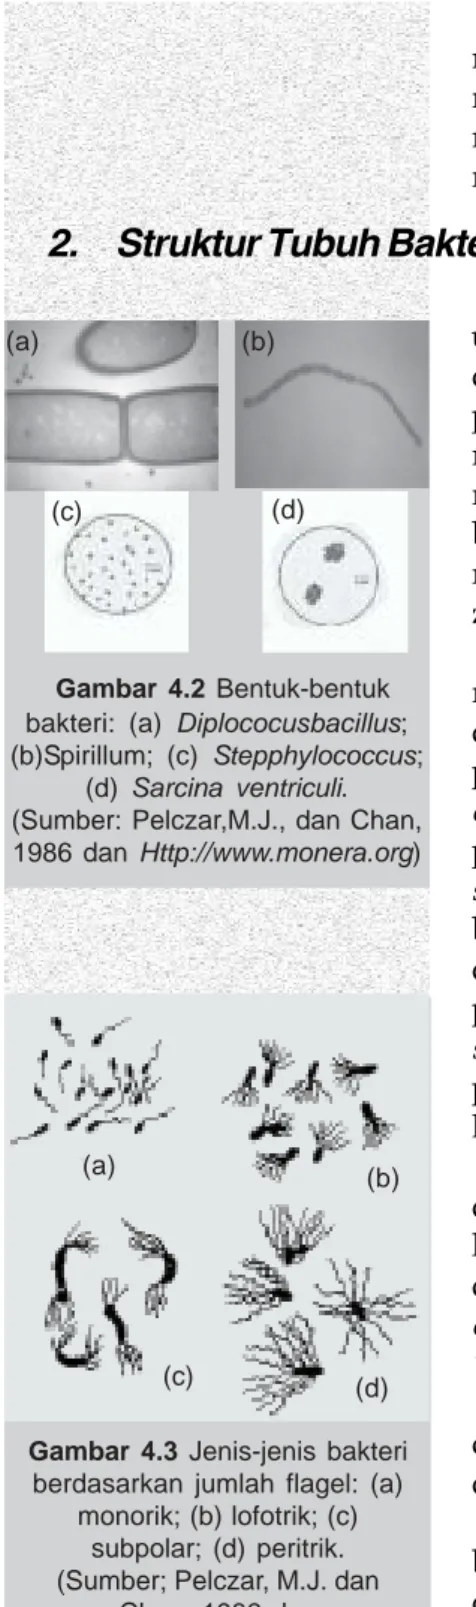 Gambar 4.3 Jenis-jenis bakteri berdasarkan jumlah flagel: (a)